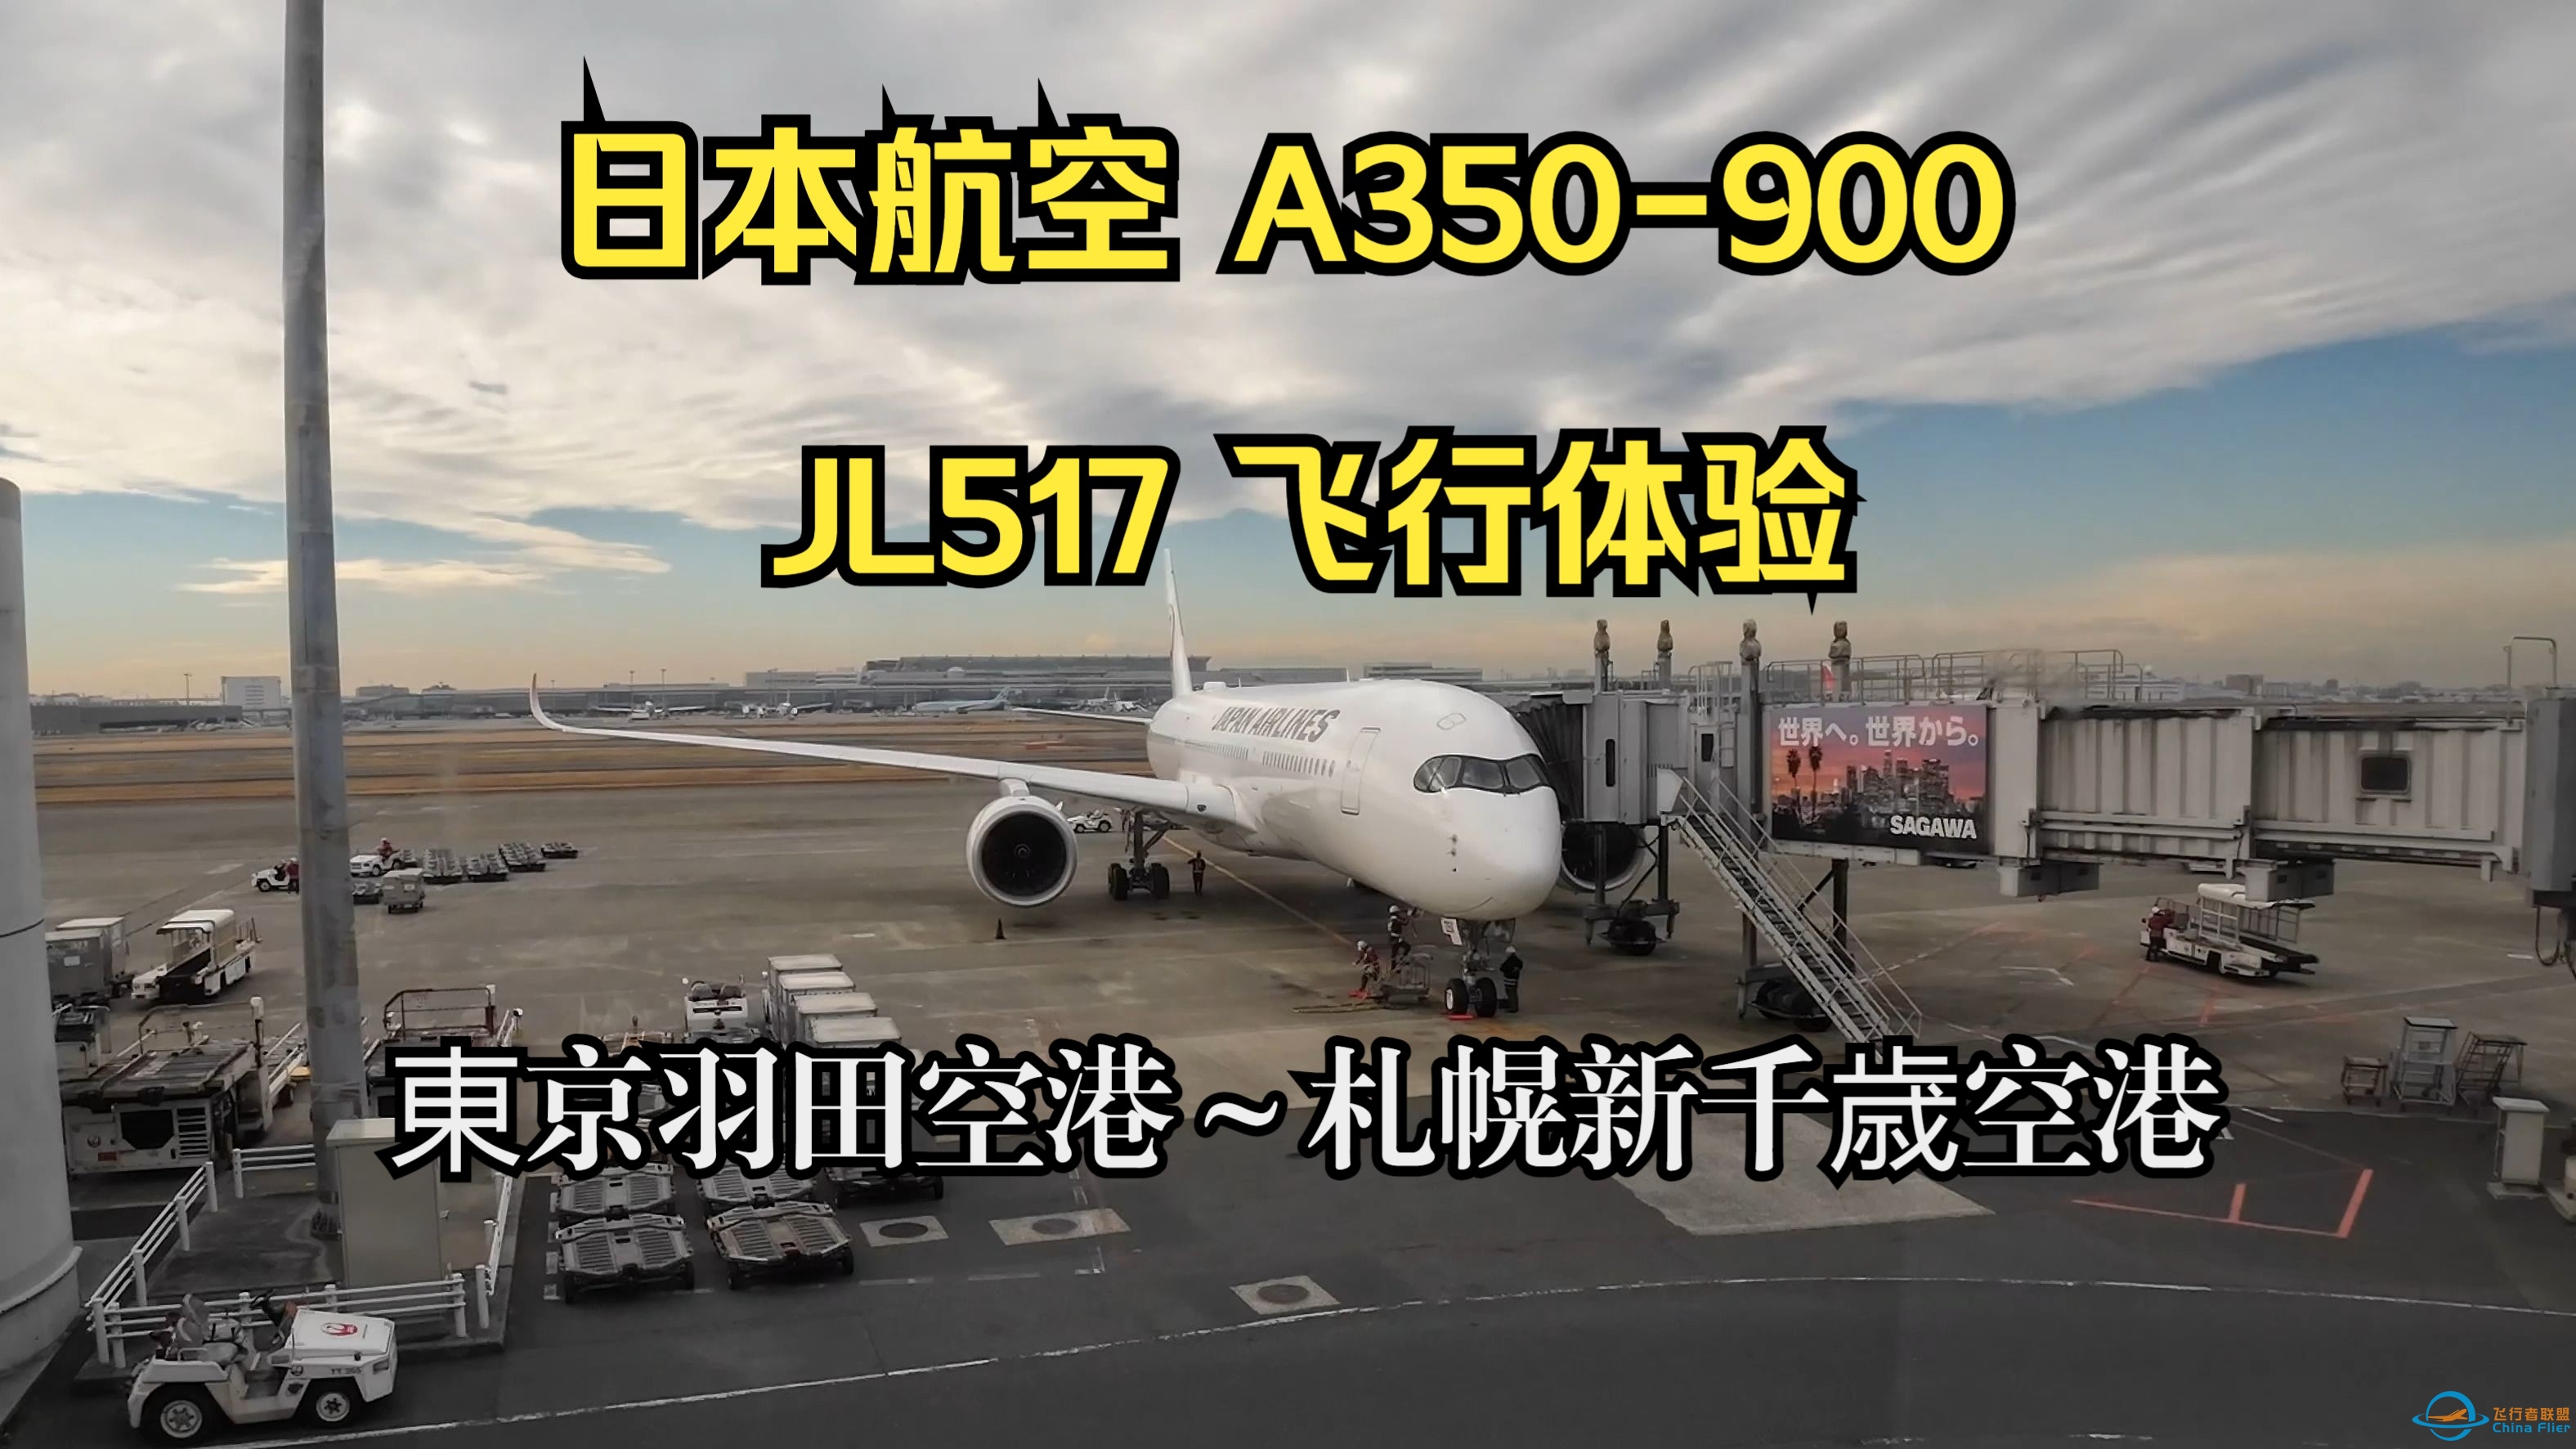 日本航空 A350-900 JL517 飞行体验-2162 